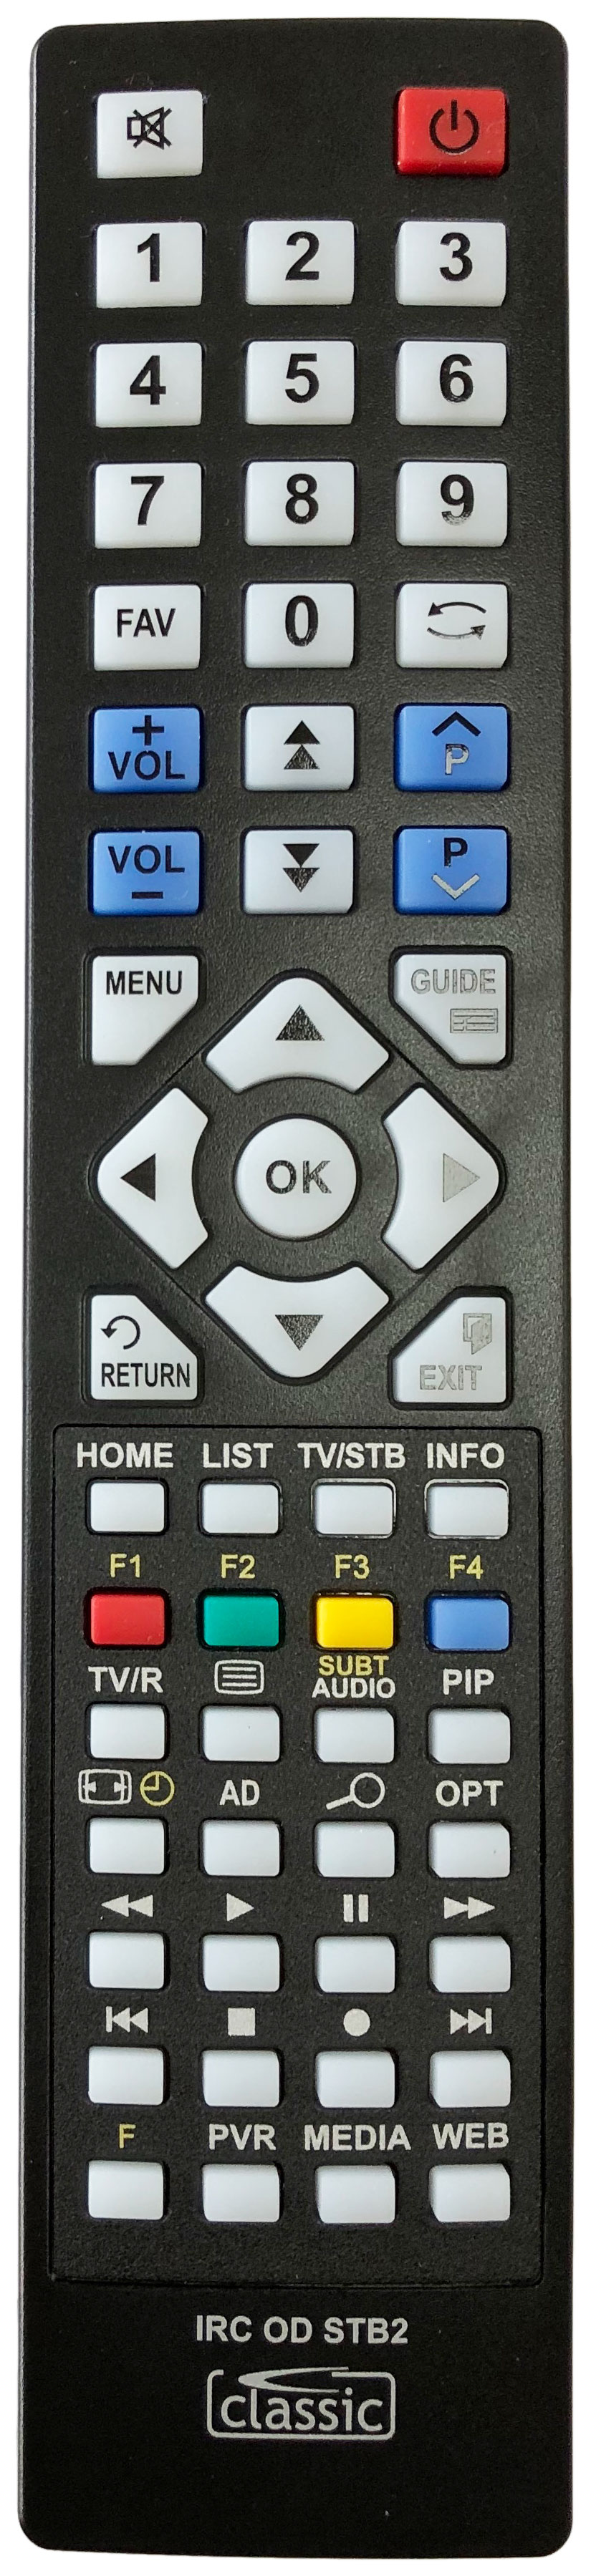 PHILIPS DTR552005 Remote Control